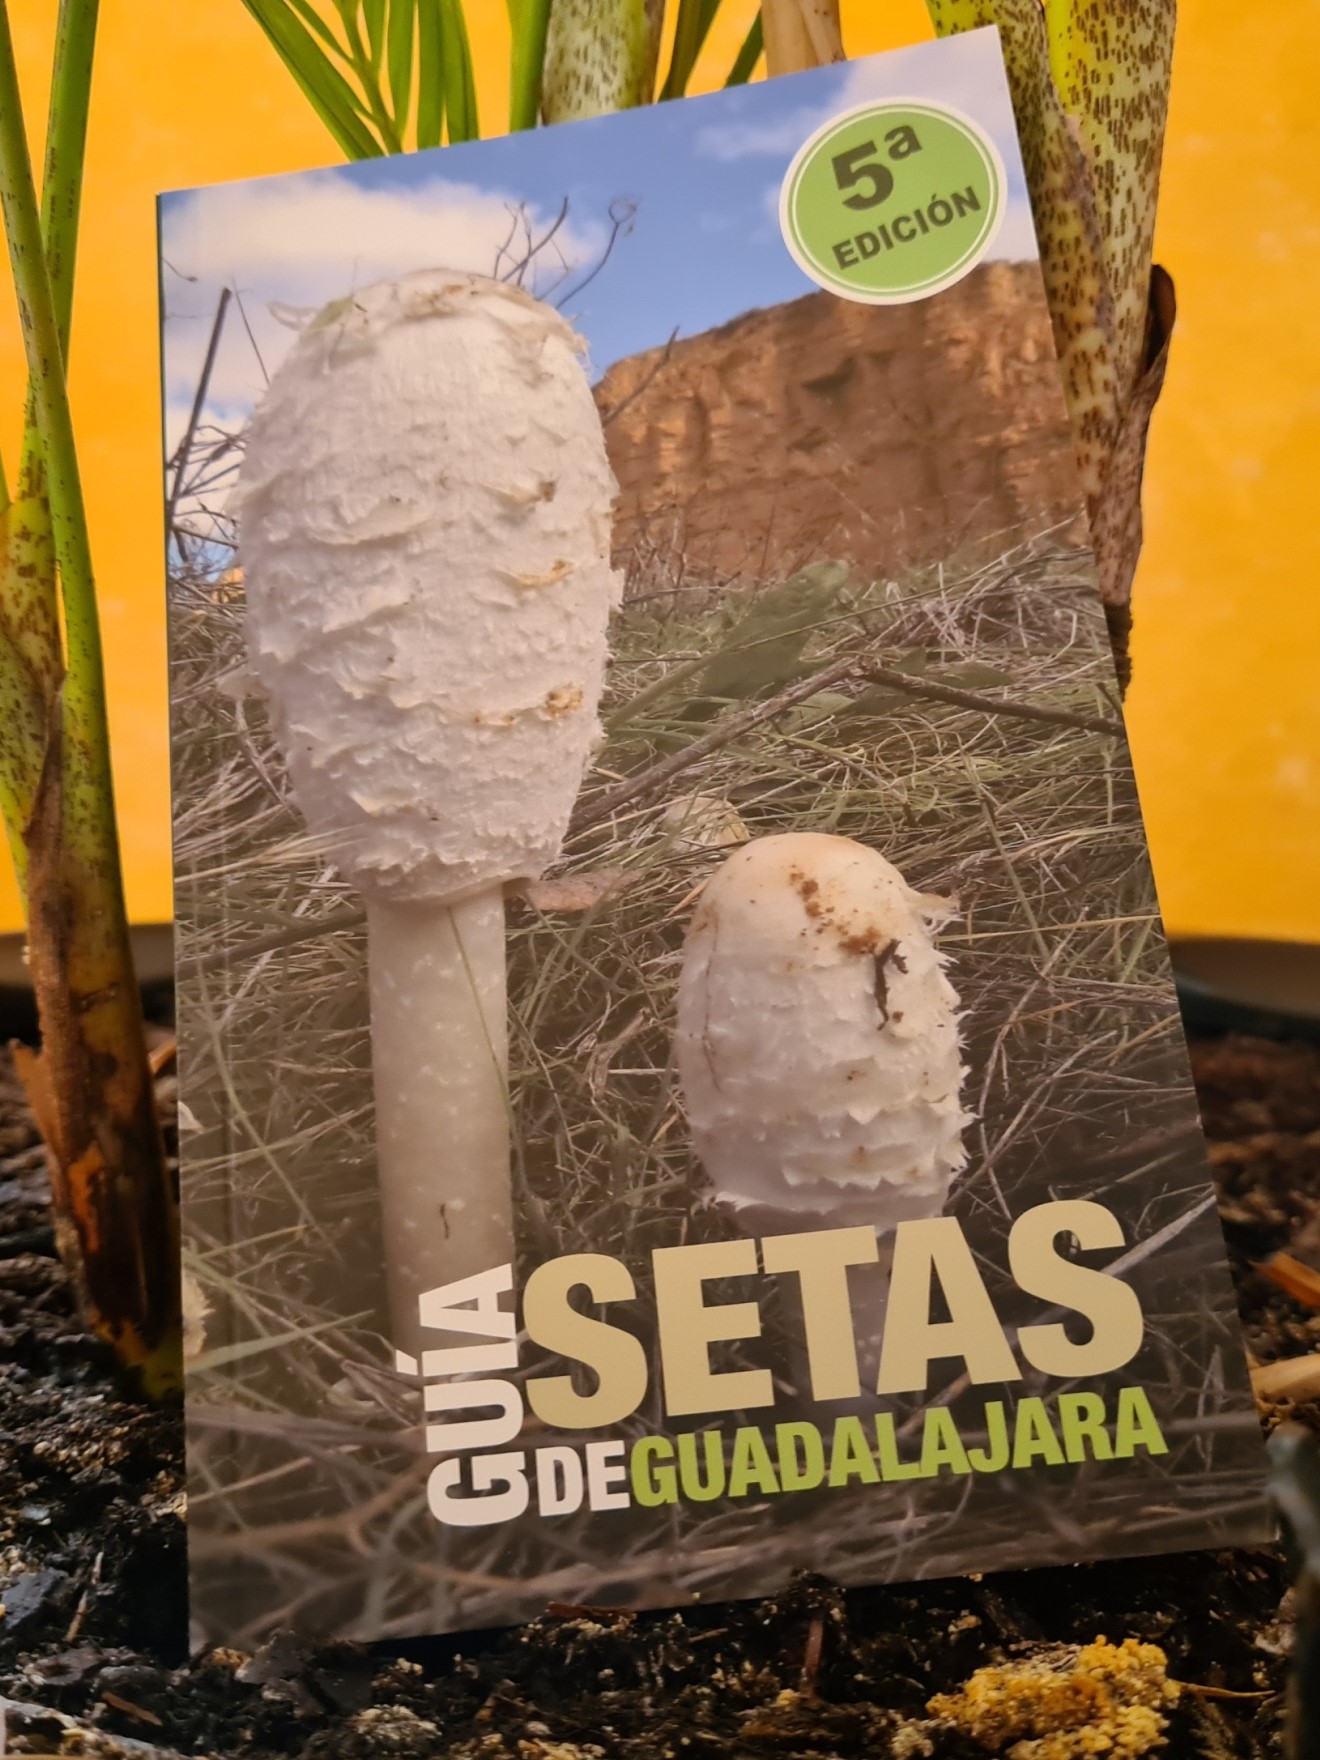 Portada de la quinta edición de la "Guía de las setas de Guadalajara".